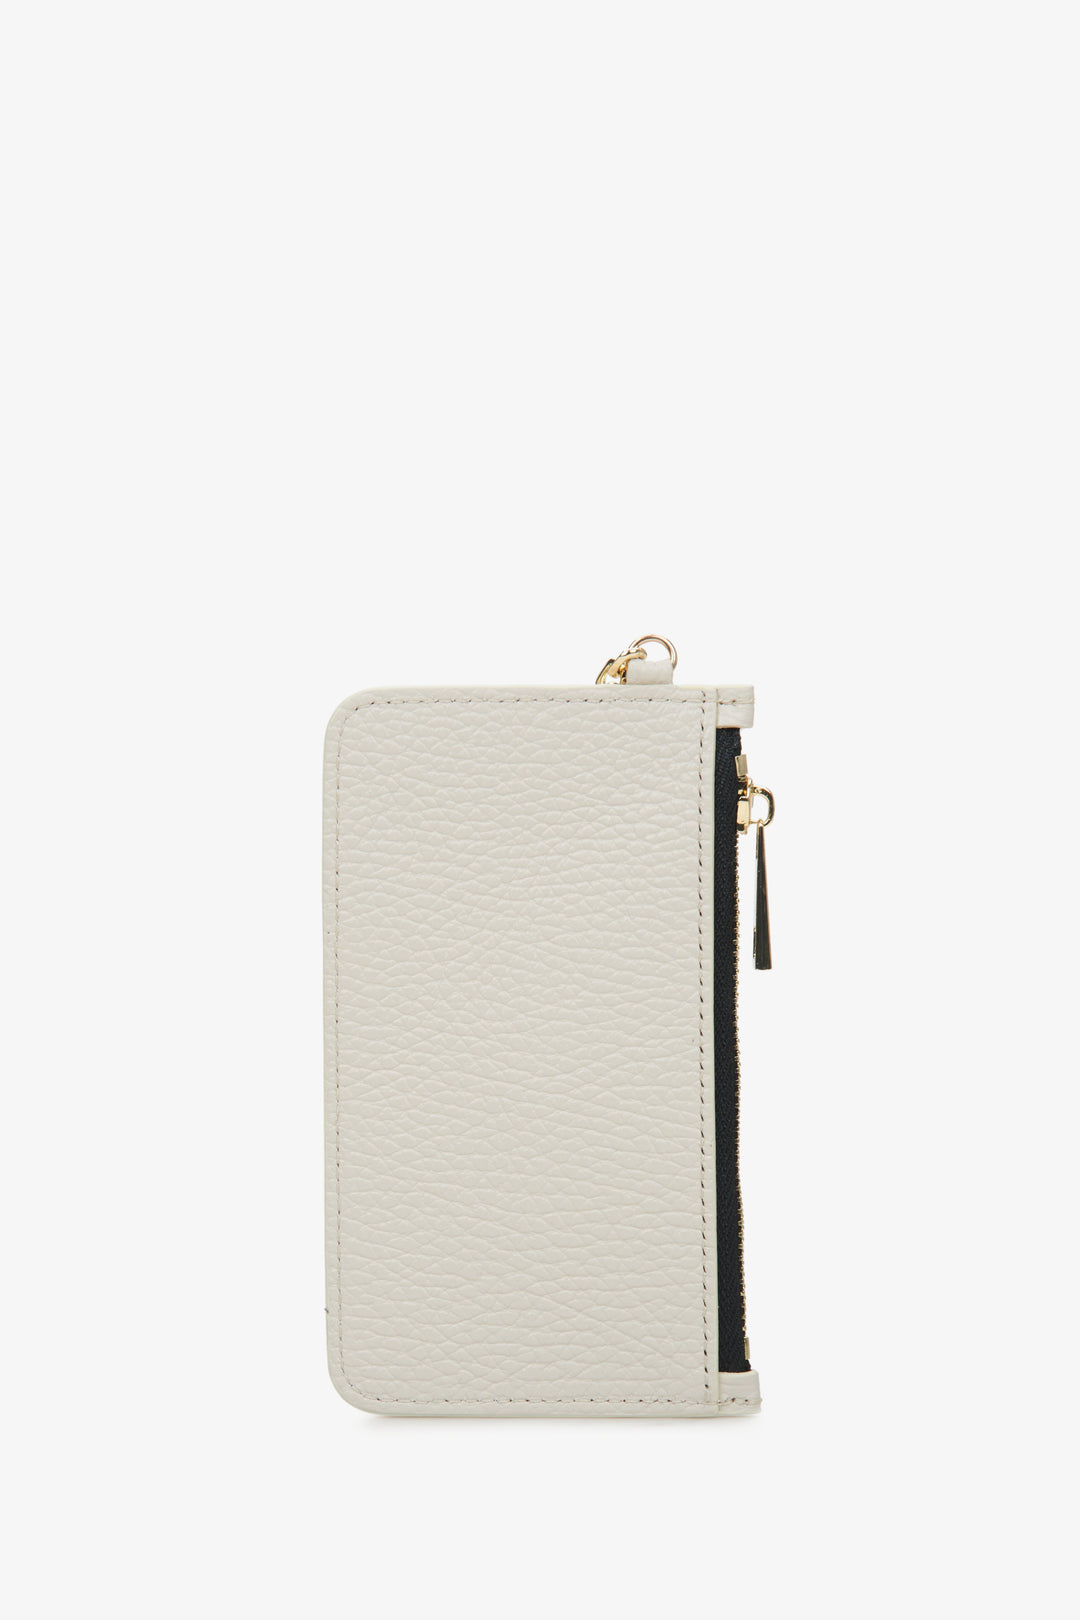 Estro women's compact milky beige wallet - reverse side.